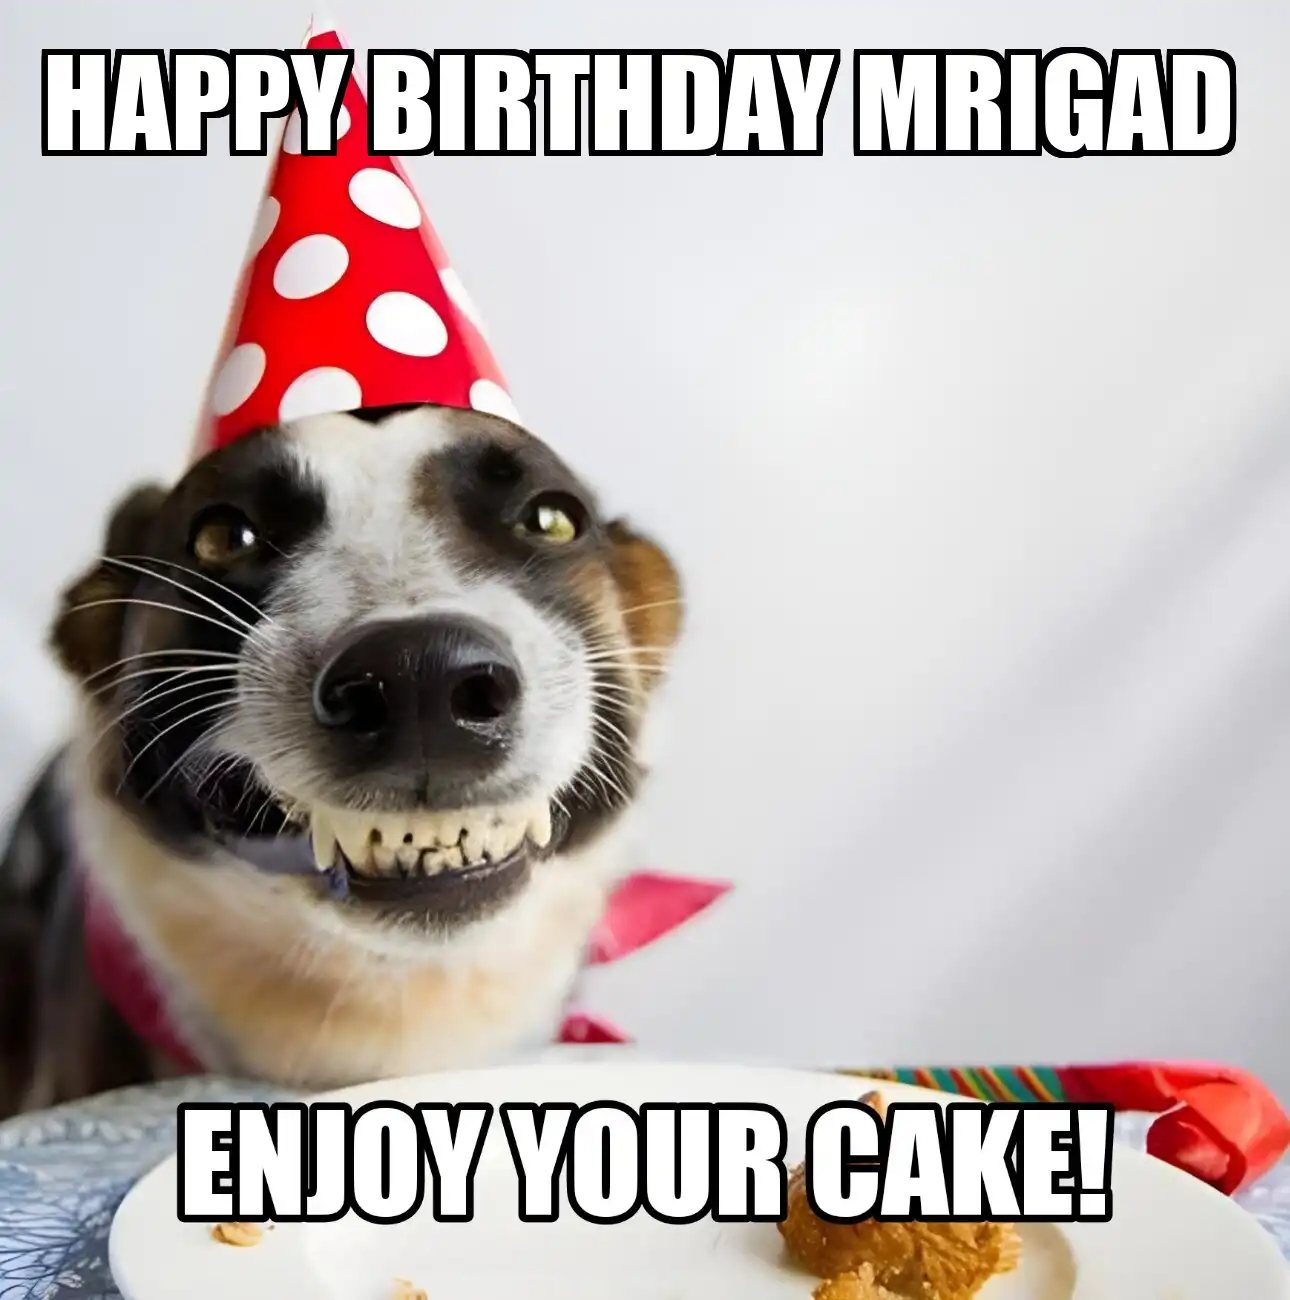 Happy Birthday Mrigad Enjoy Your Cake Dog Meme